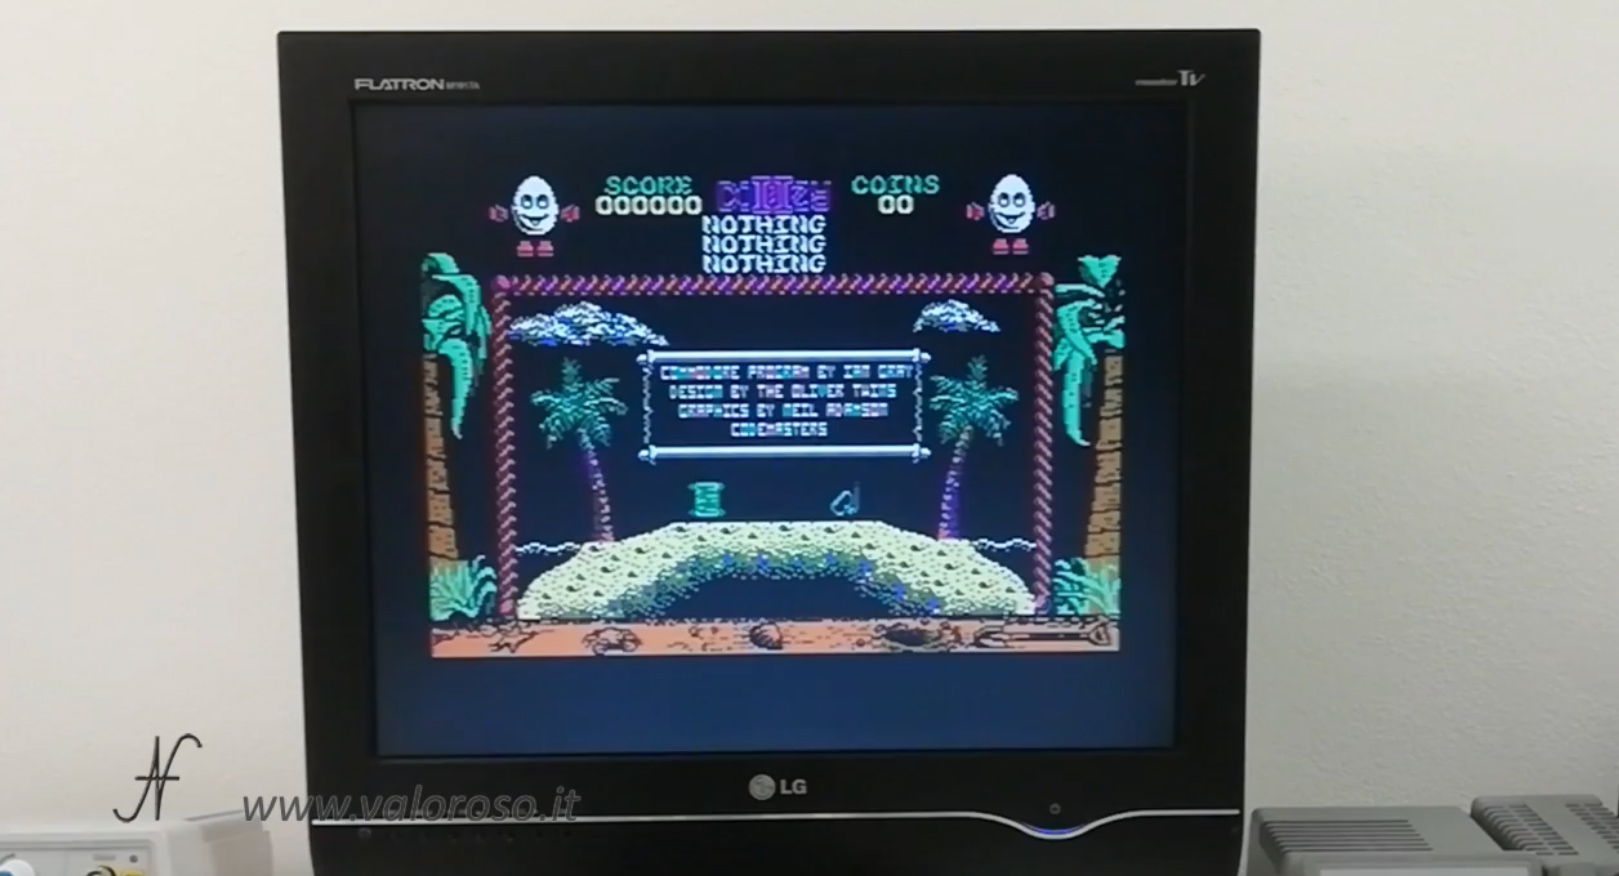 Datel Action Replay, Commodore 64, dizzy salvataggio gioco, copia videogioco